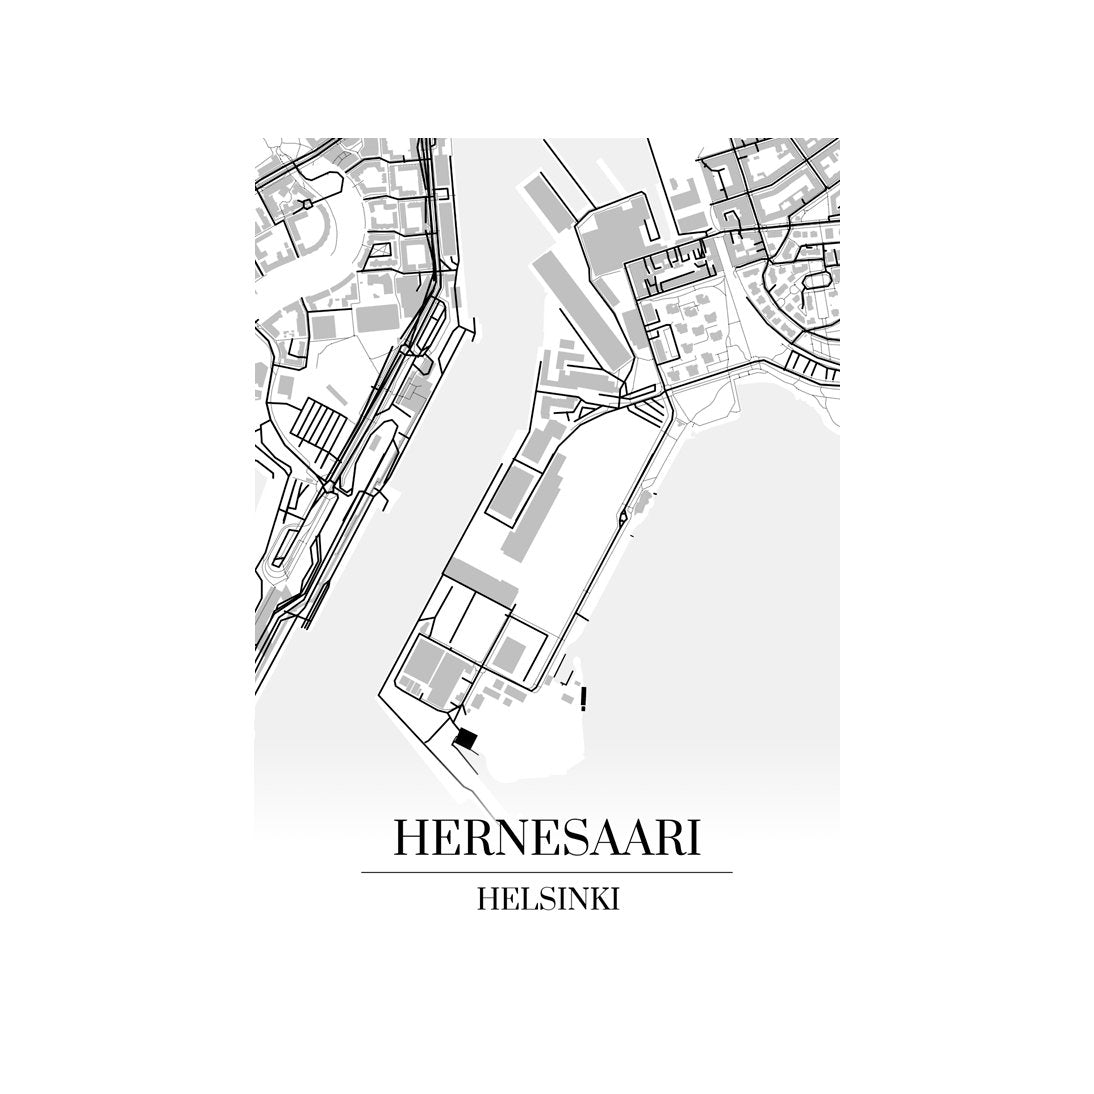 Hernesaari